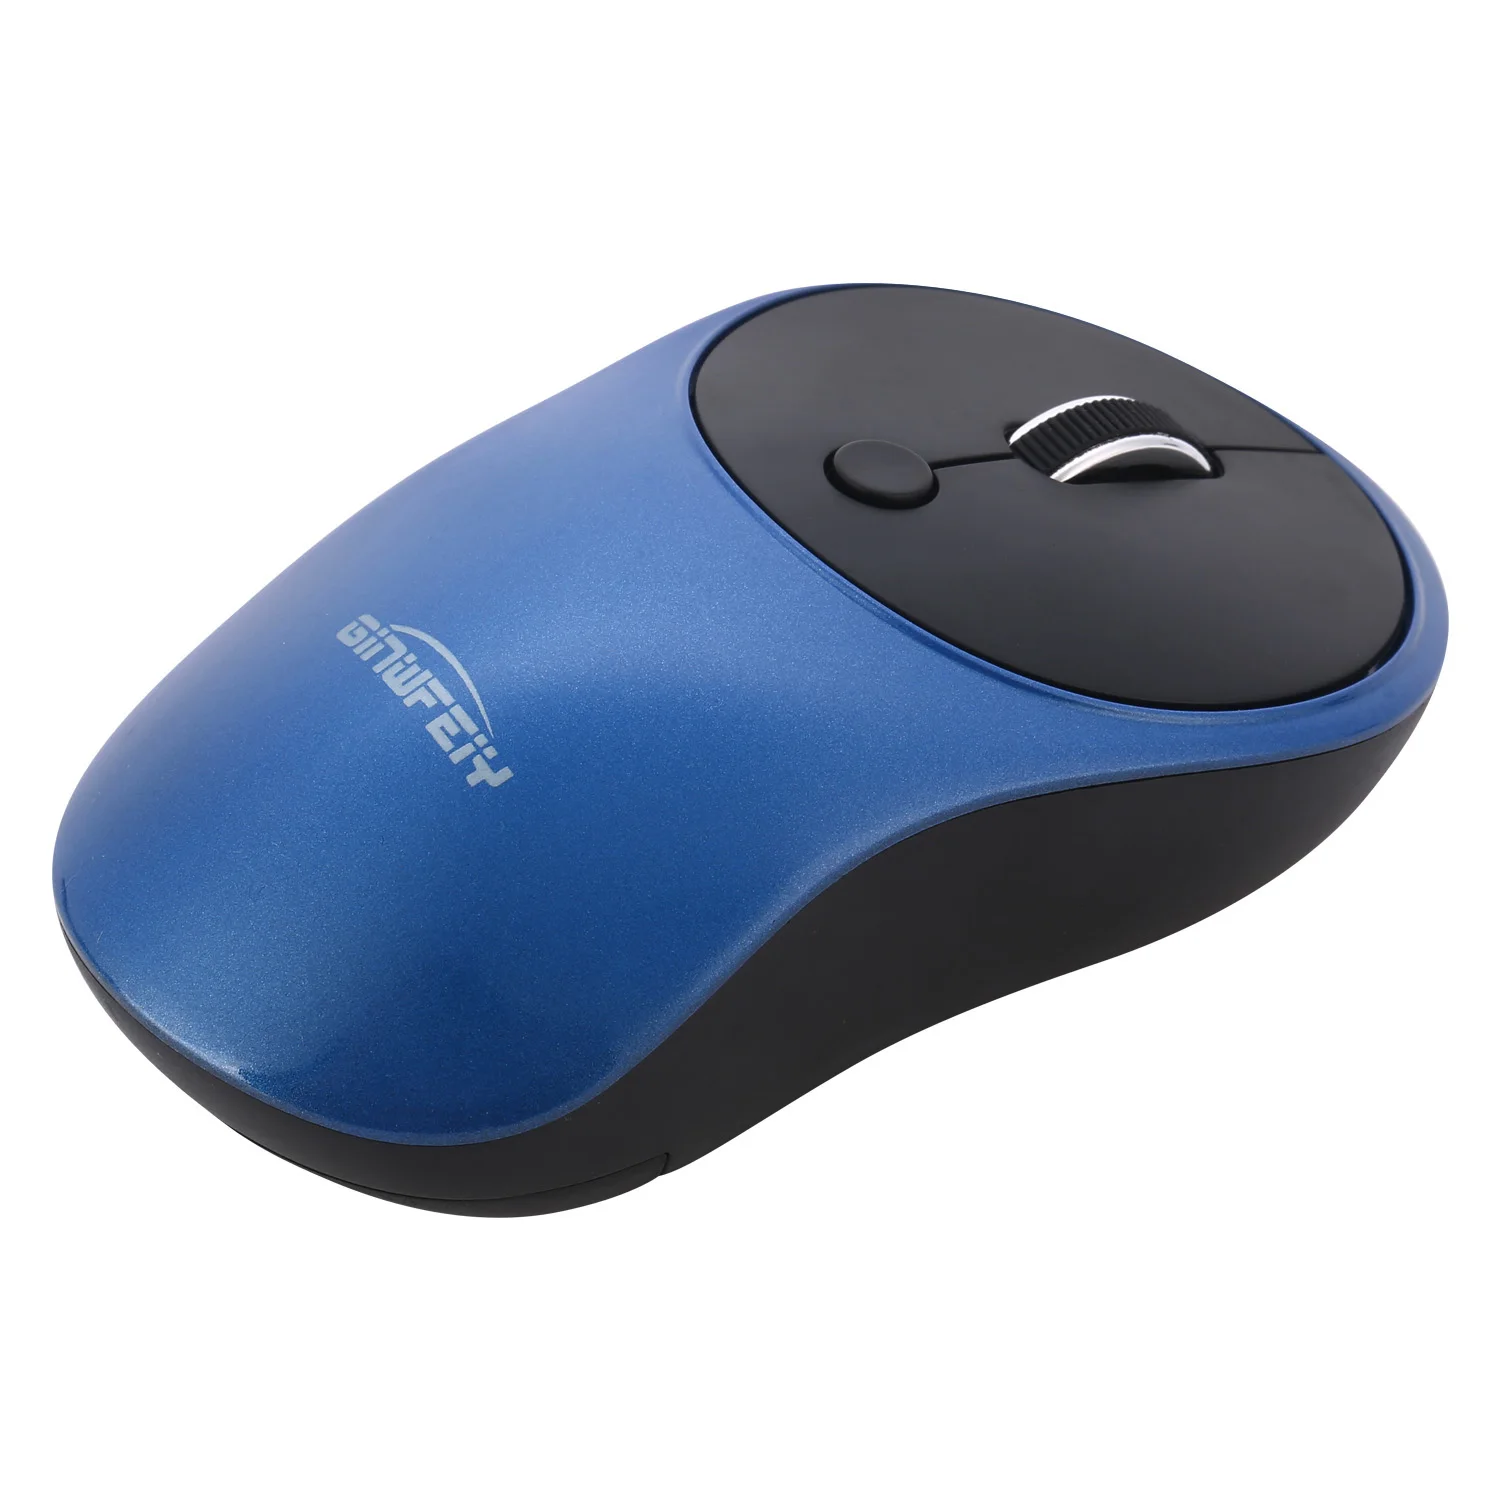 2,4G беспроводная мышь эргономичная мышь 4 кнопки ноутбук компьютер Usb мышь с приемником для Windows Беспроводная игровая мышь - Цвет: Синий